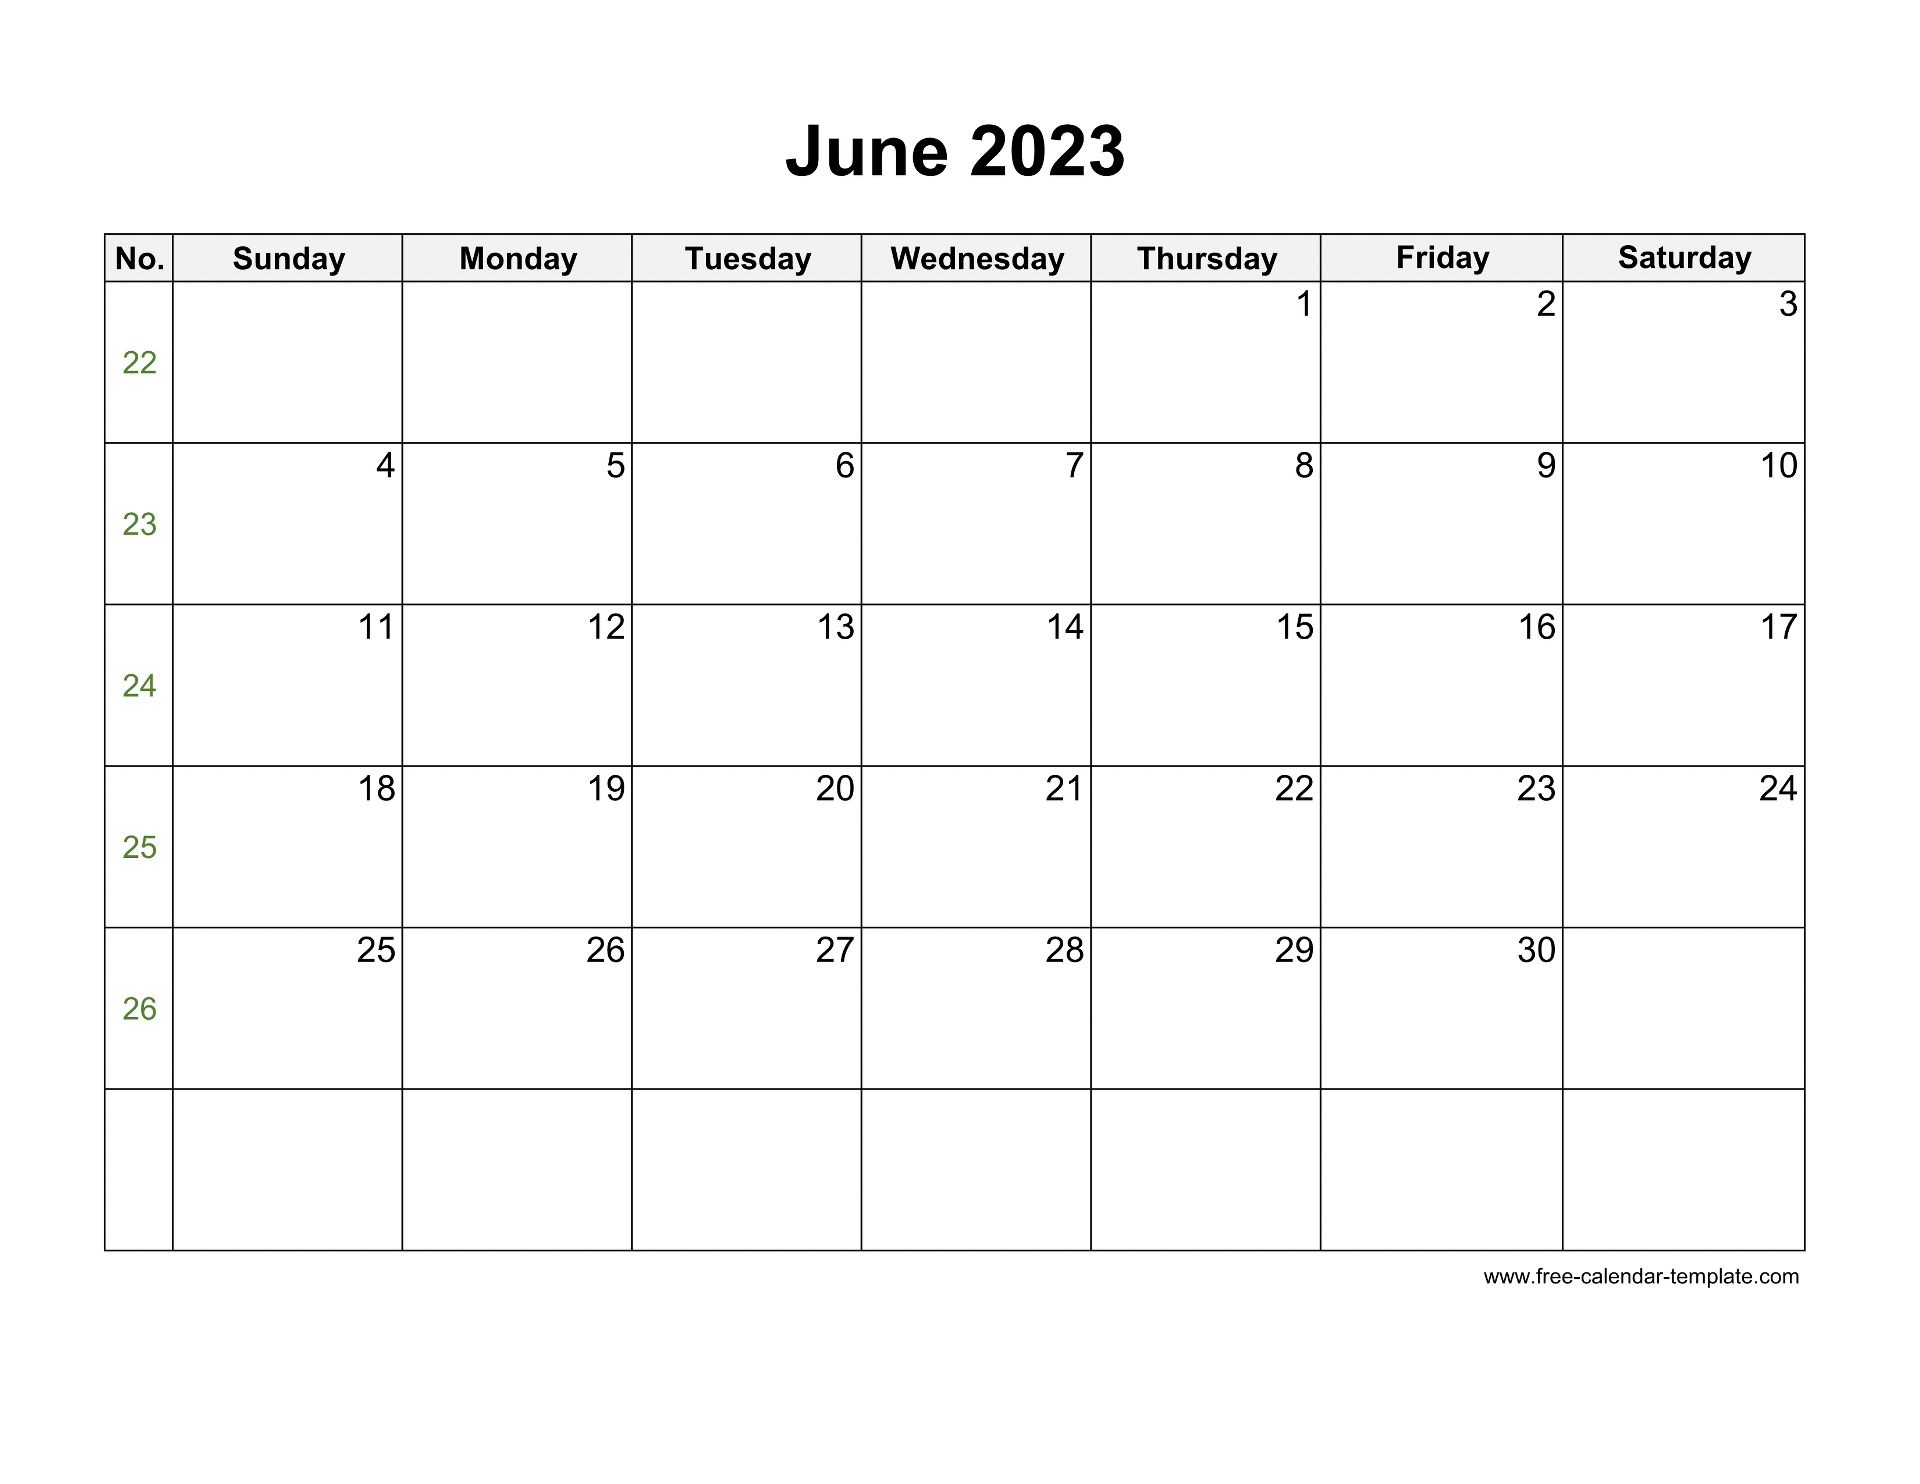 june-2023-calendar-free-printable-calendar-june-2023-calendar-free-printable-calendar